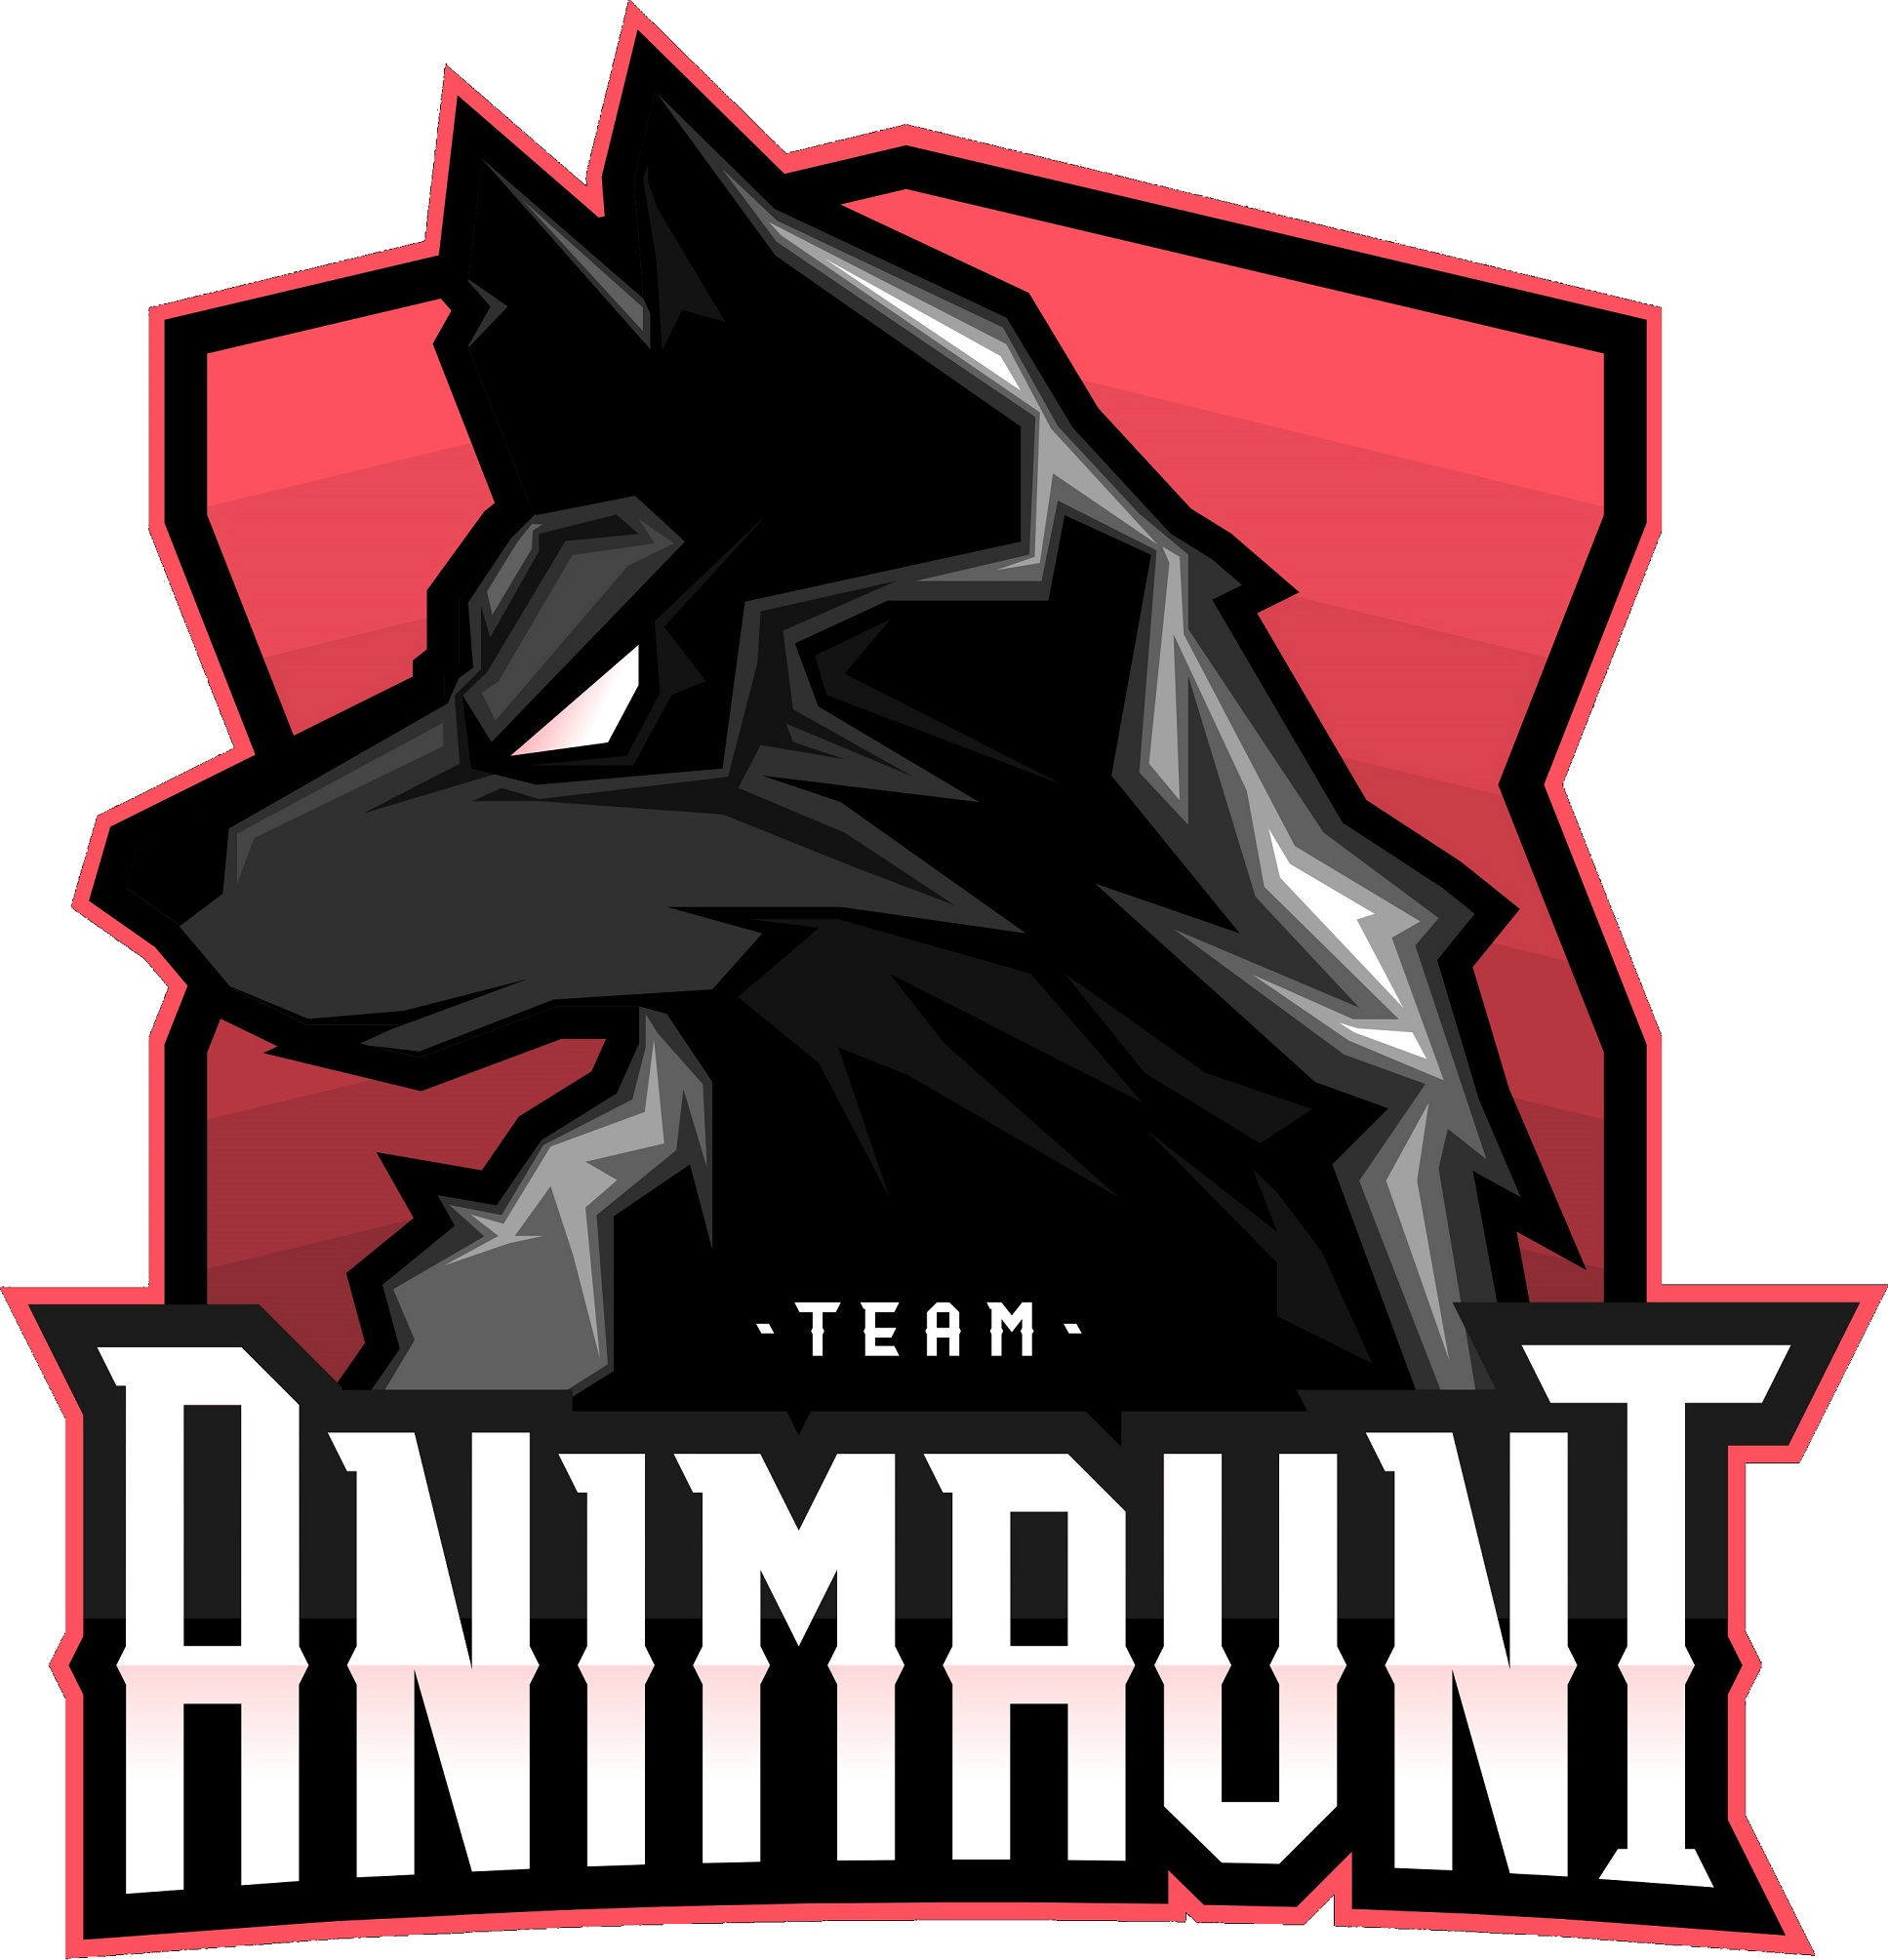 AniMaunt Team рвется в бой!